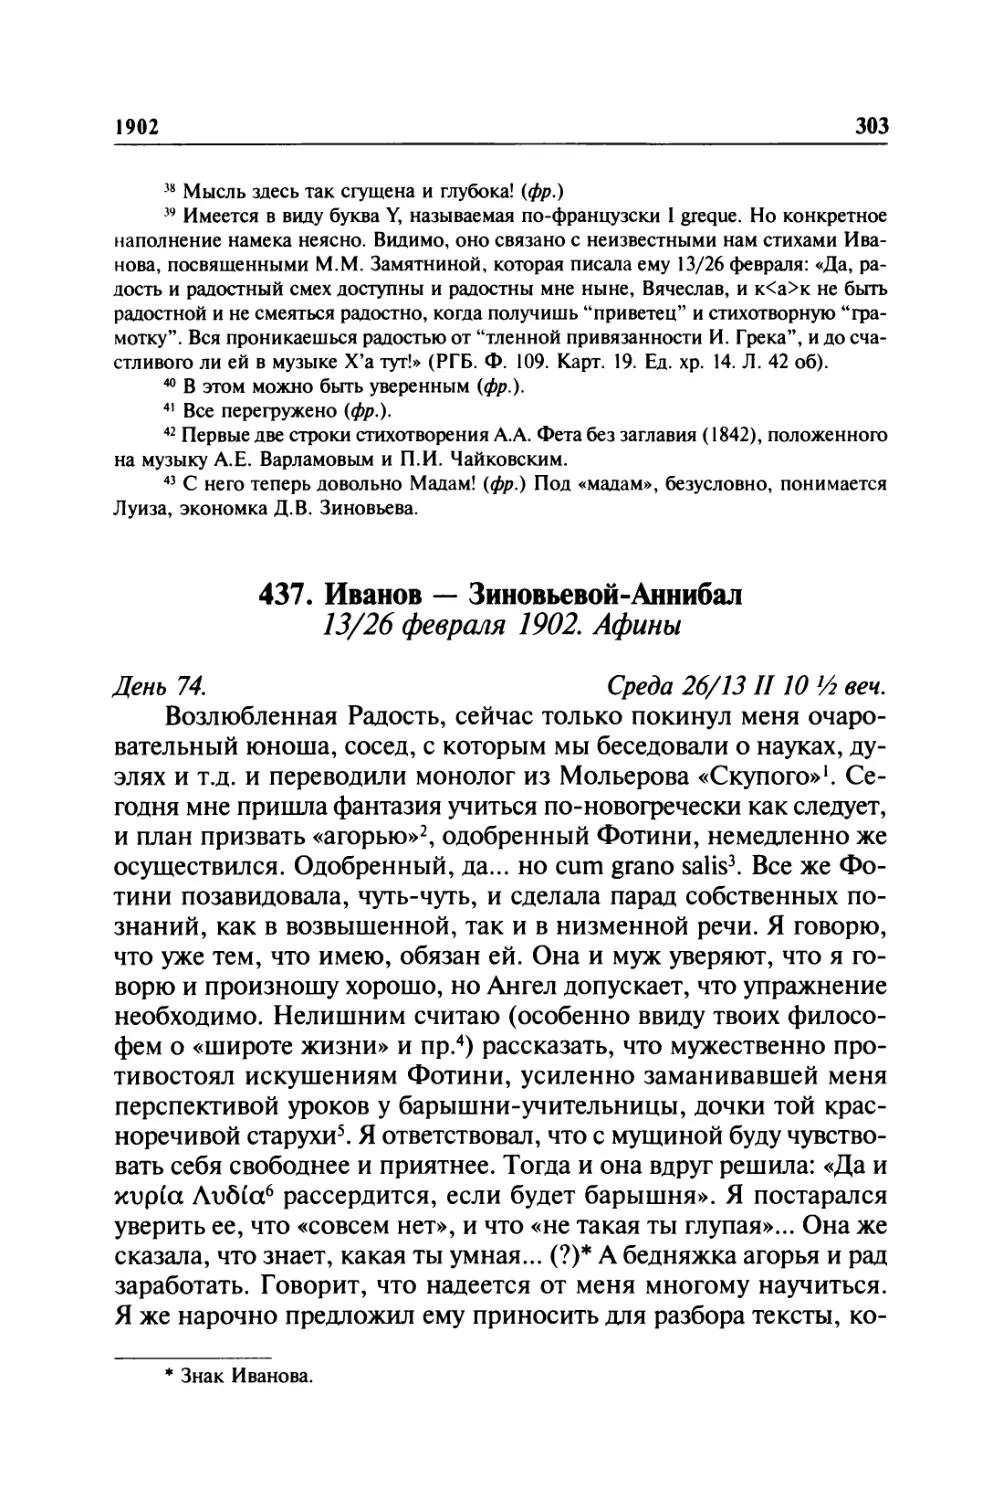 438. Иванов — Зиновьевой-Аннибал. 14—15 / 27—28 февраля 1902. Афины